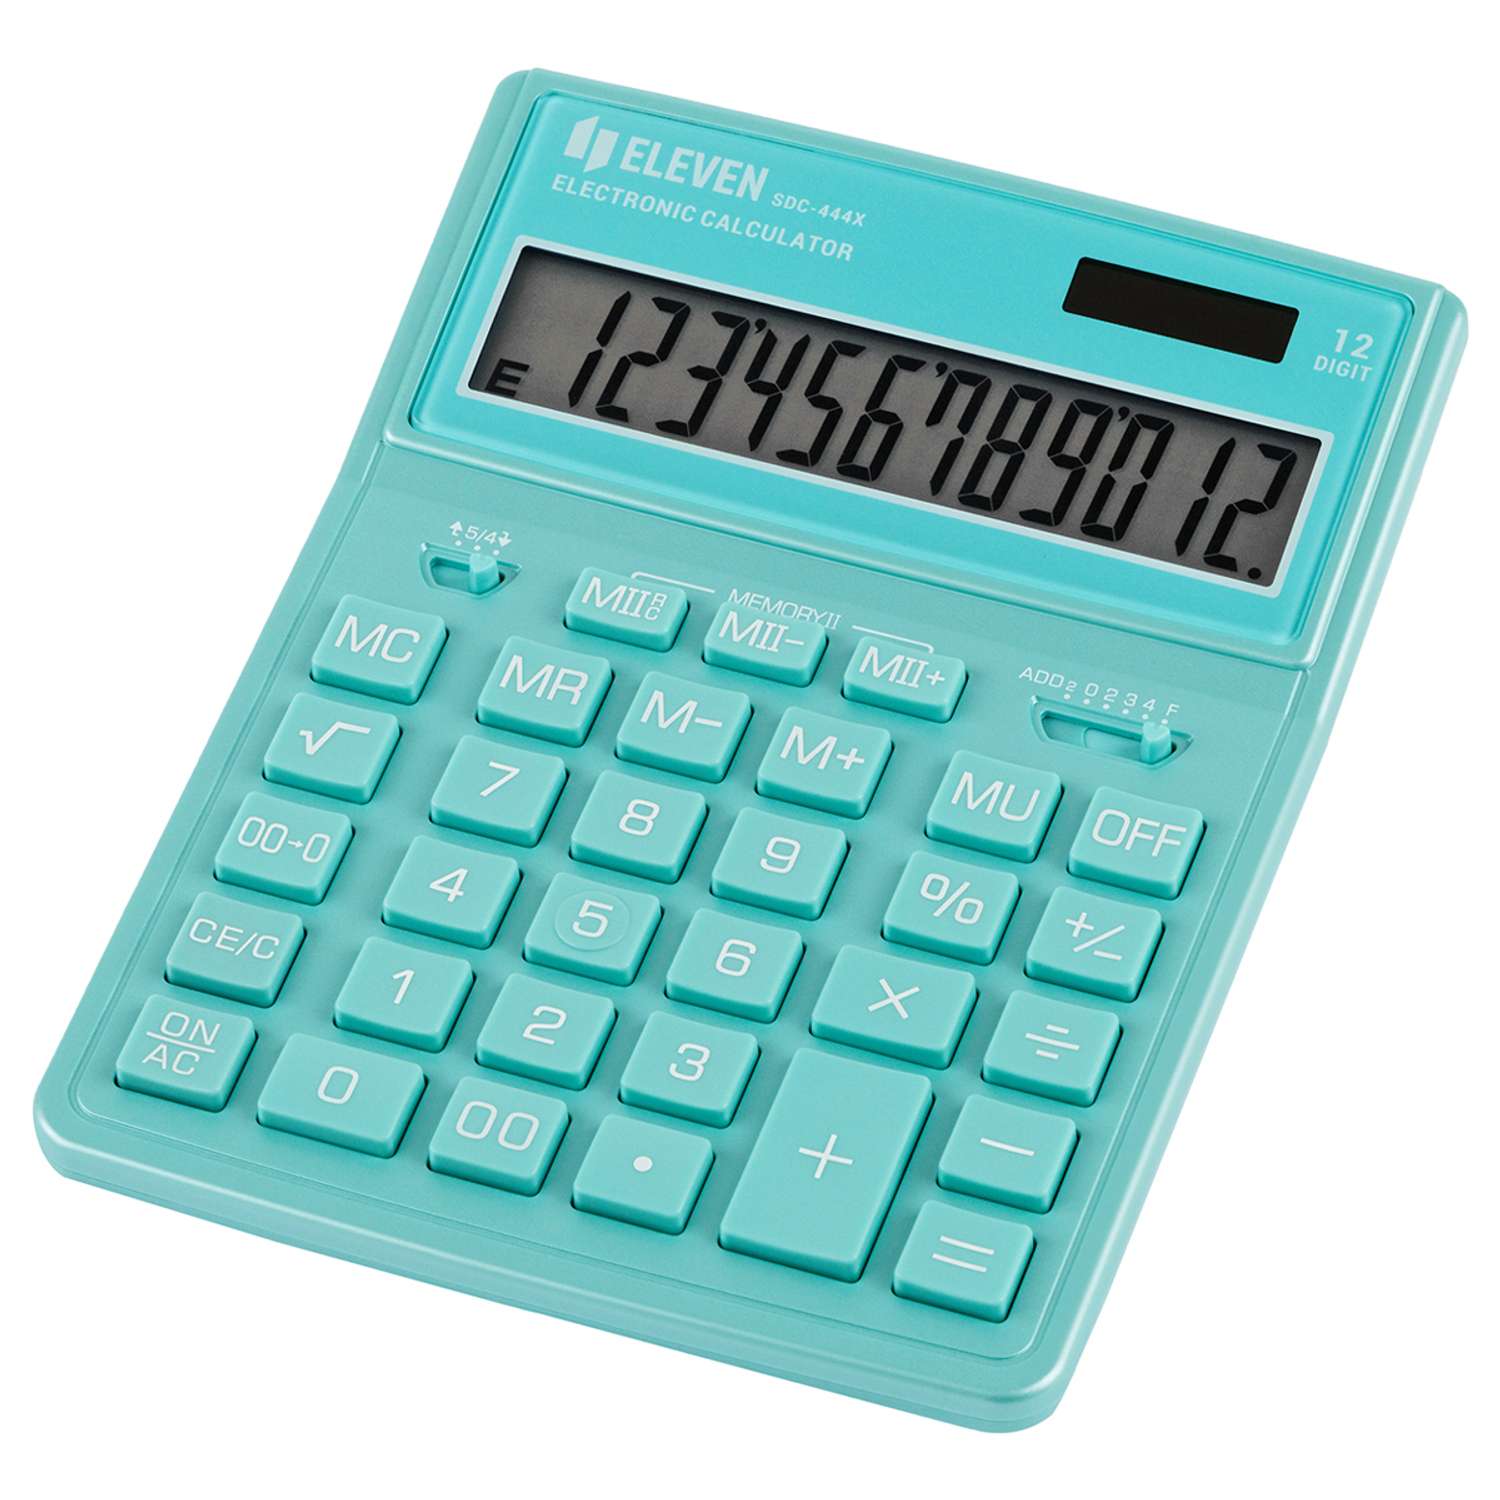 Калькулятор Eleven SDC-444X-GN 12 разрядов двойное питание 155*204*33мм бирюзовый - фото 1